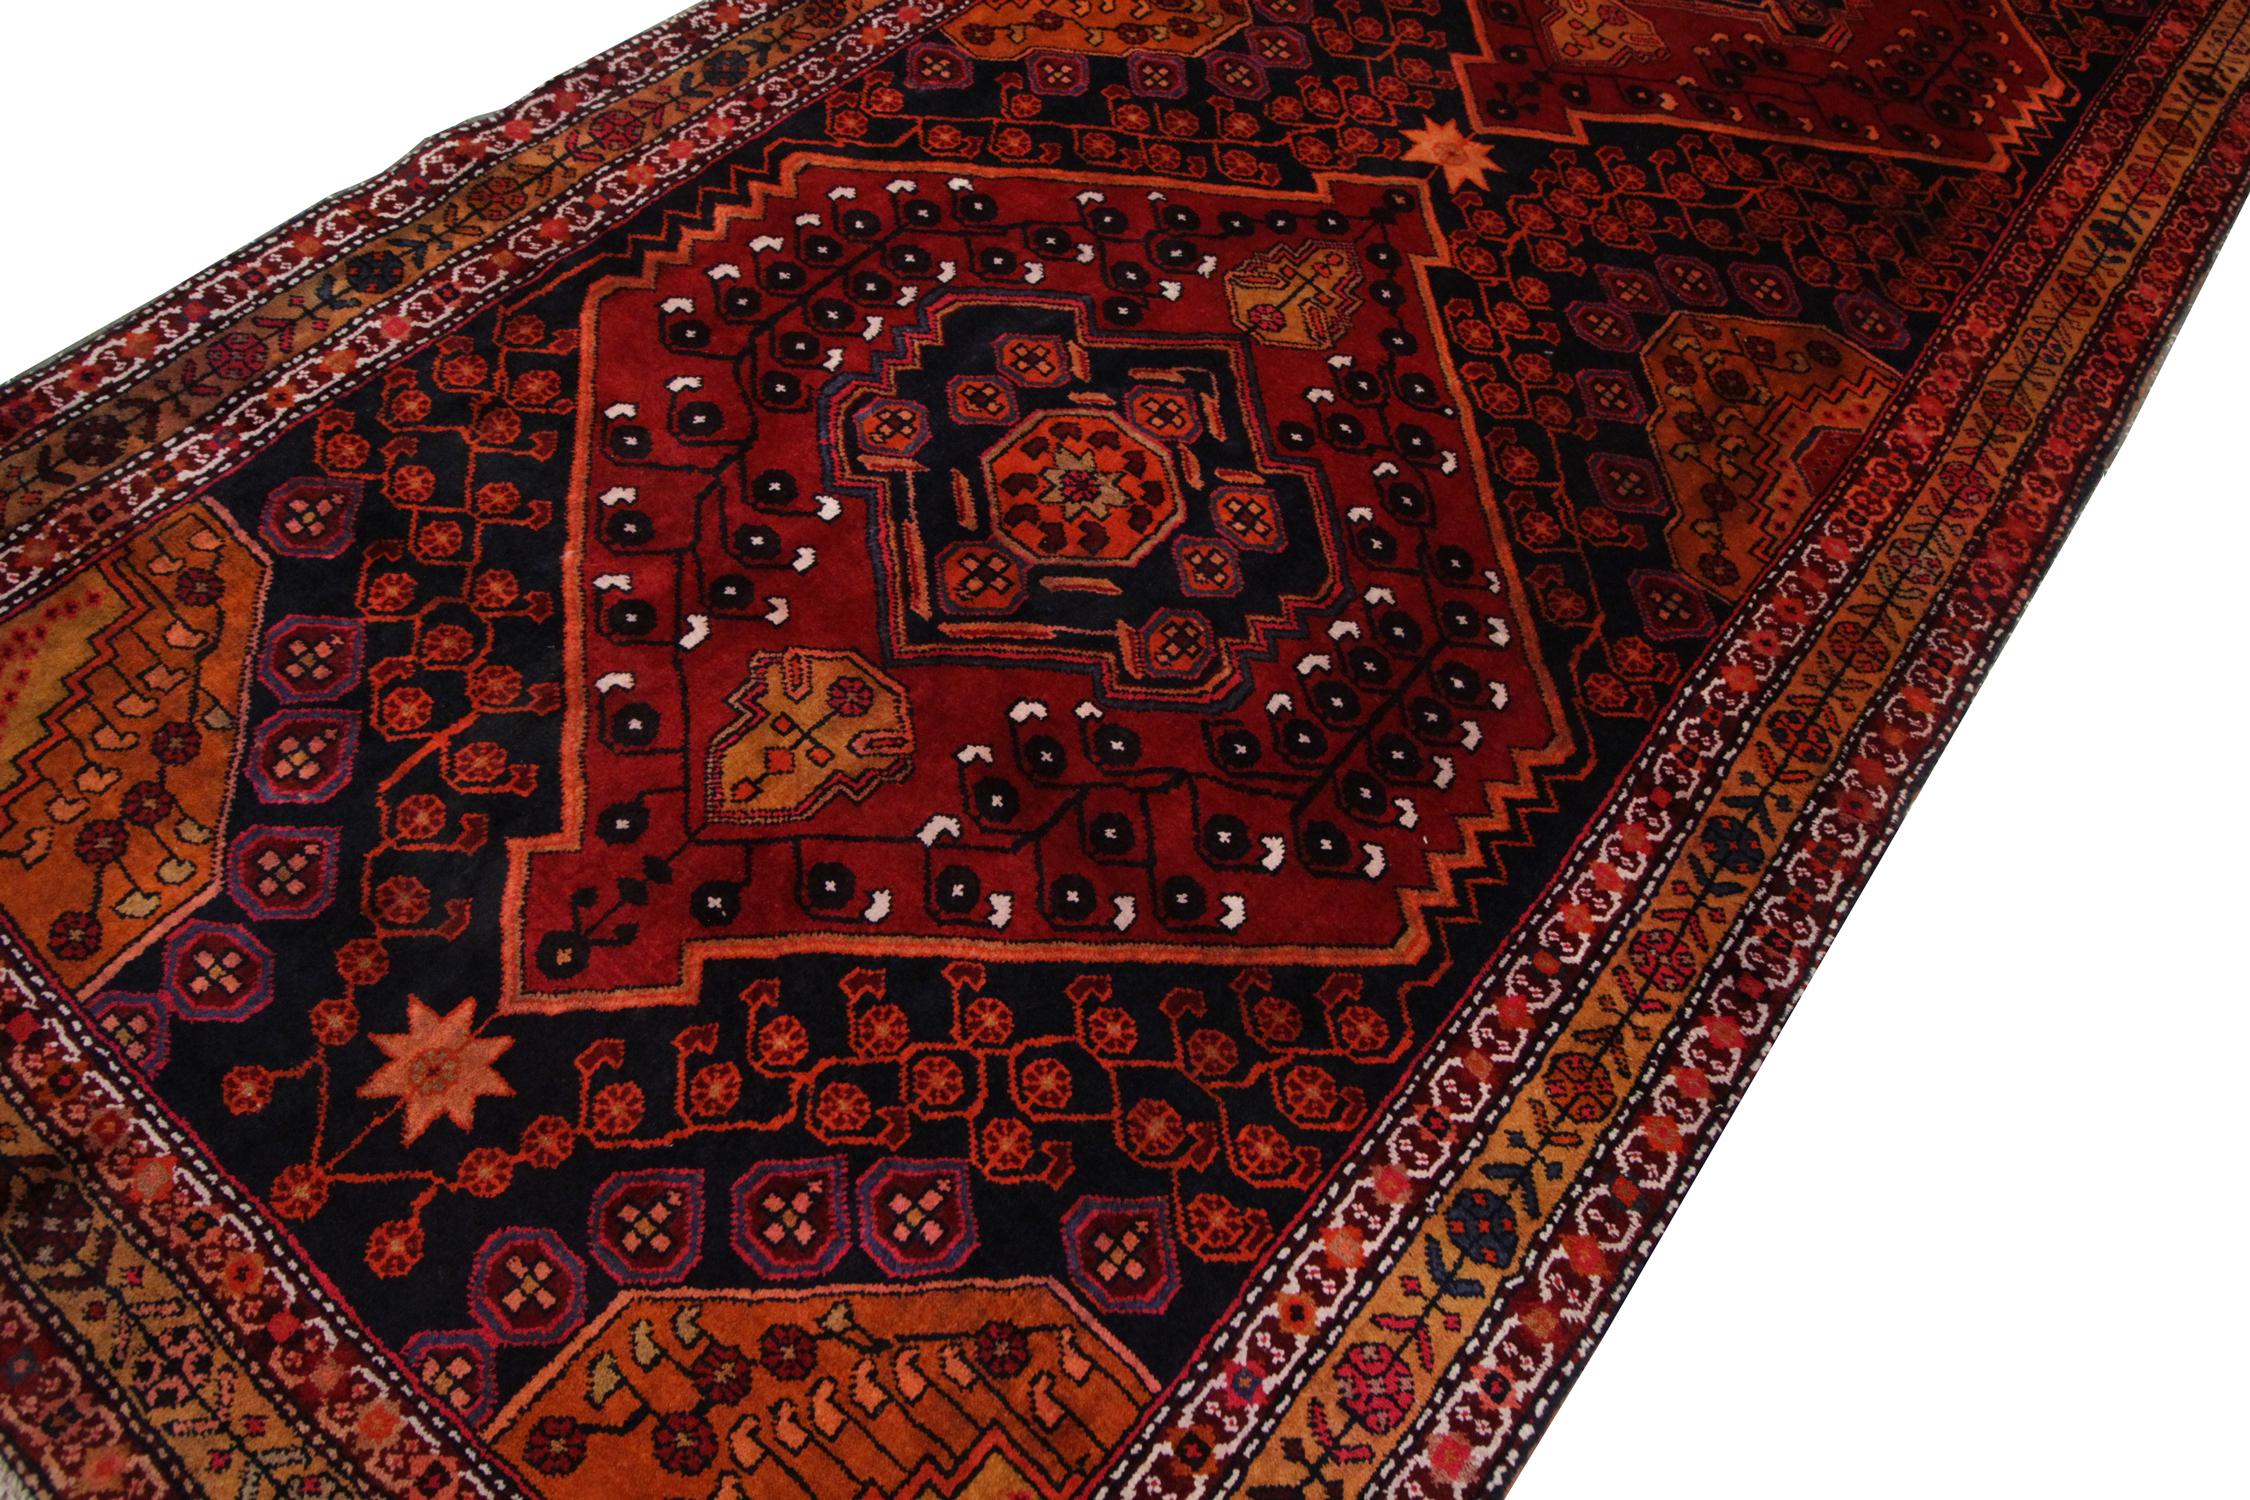 Antiker handgefertigter Teppich mit kompliziertem Design und tiefen Orange- und Rottönen, perfekt für jede moderne oder traditionelle Wohnkultur. Dieser kaukasische Orientteppich ist handgewebt und besteht aus feinster handgesponnener Wolle, die mit